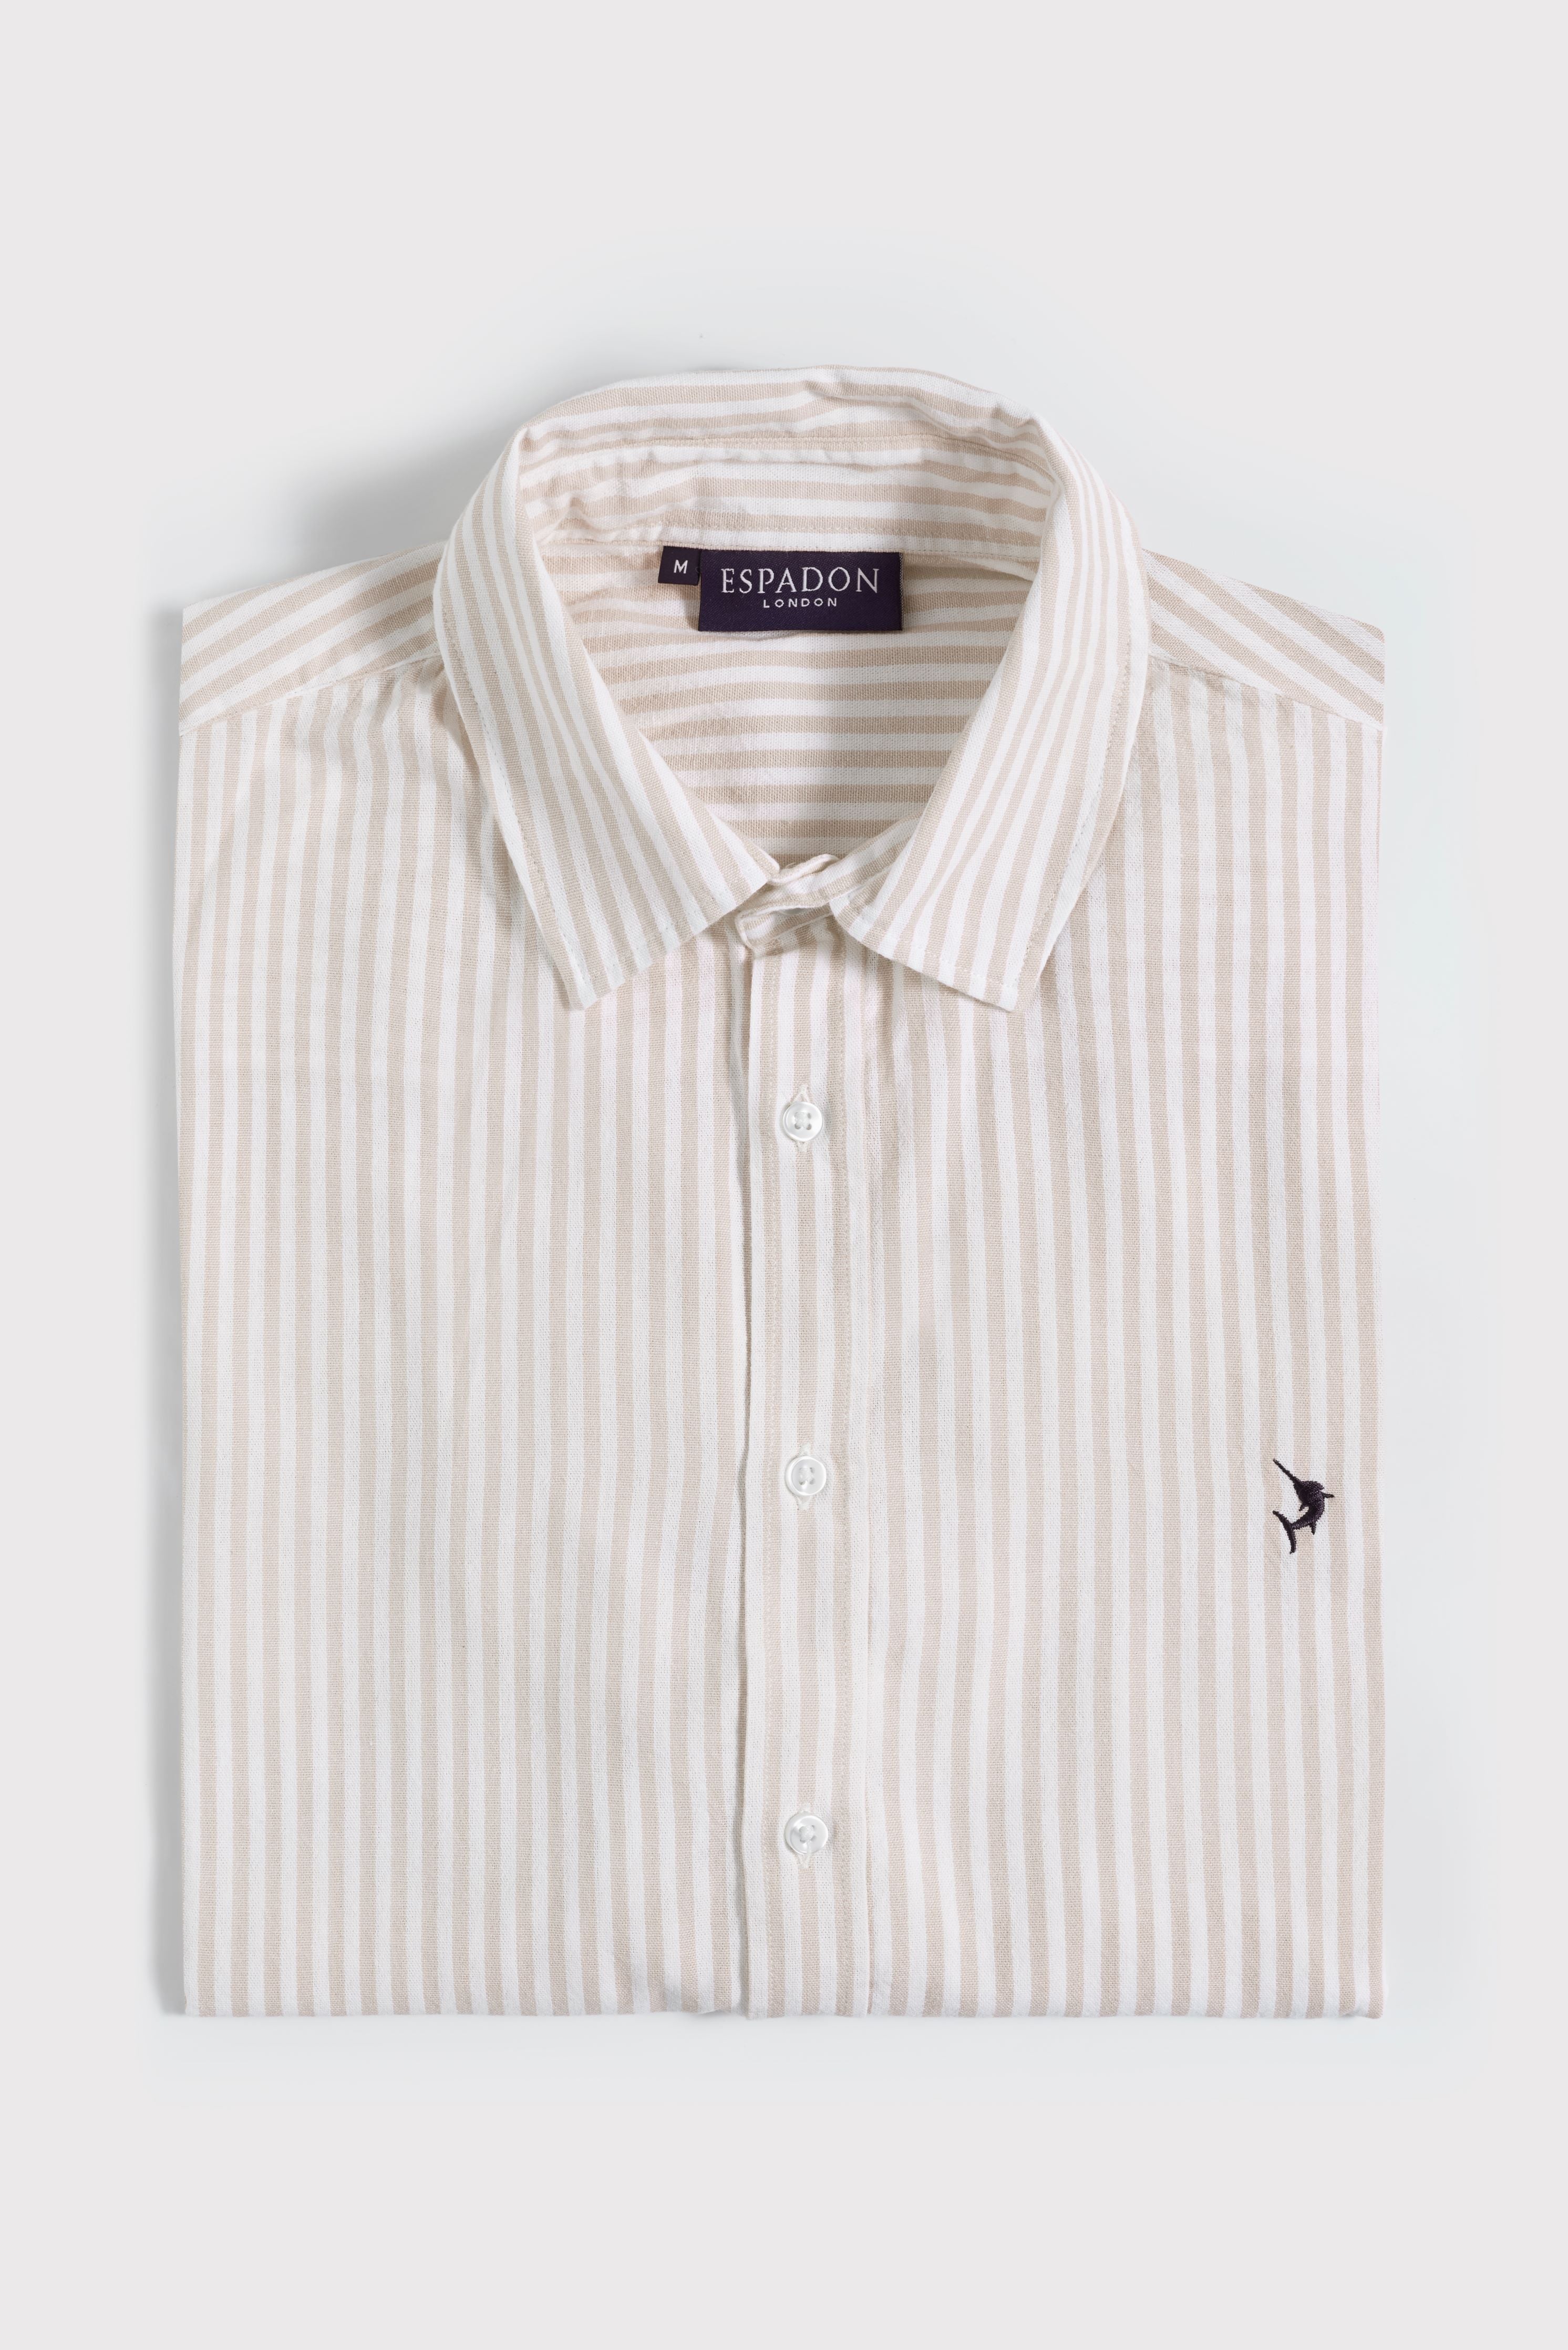 Espadon Striped Cotton Shirt - Ochre